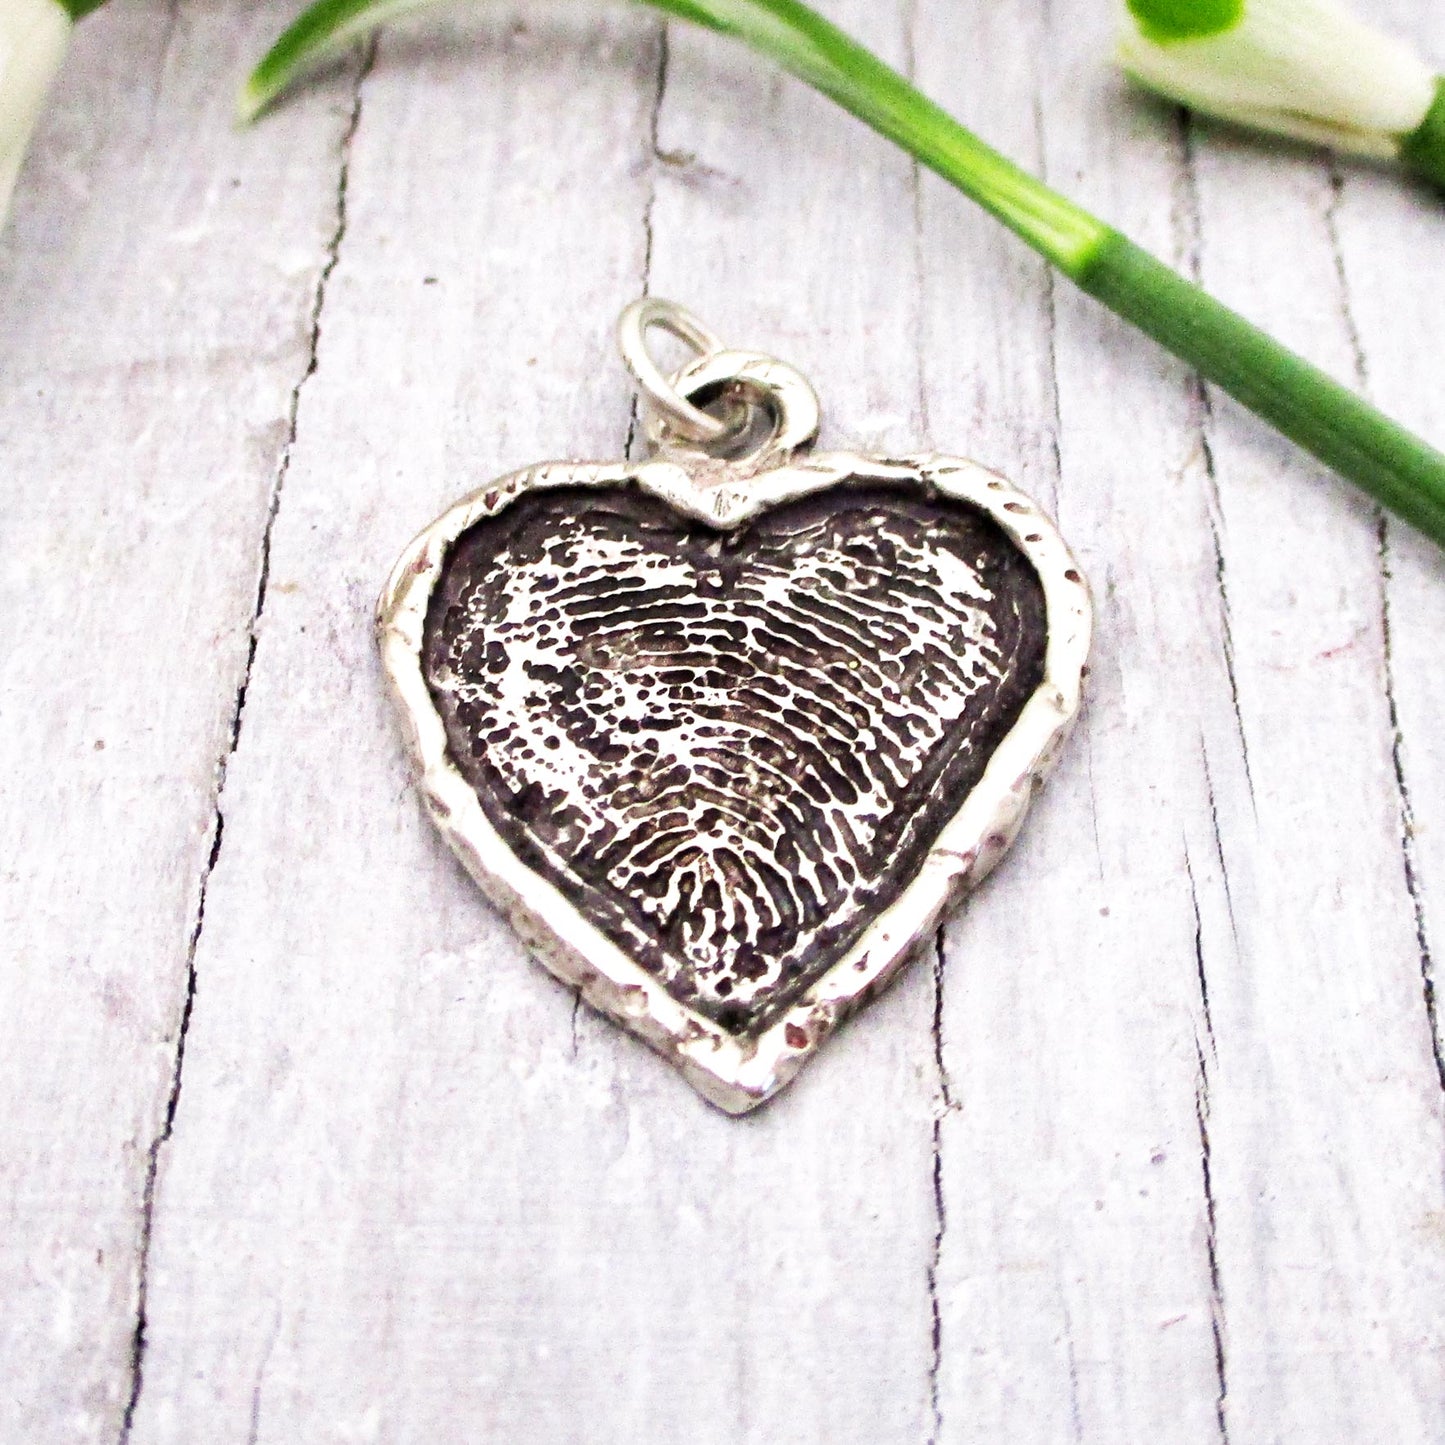 Framed Heart Fingerprint Pendant in Sterling Silver